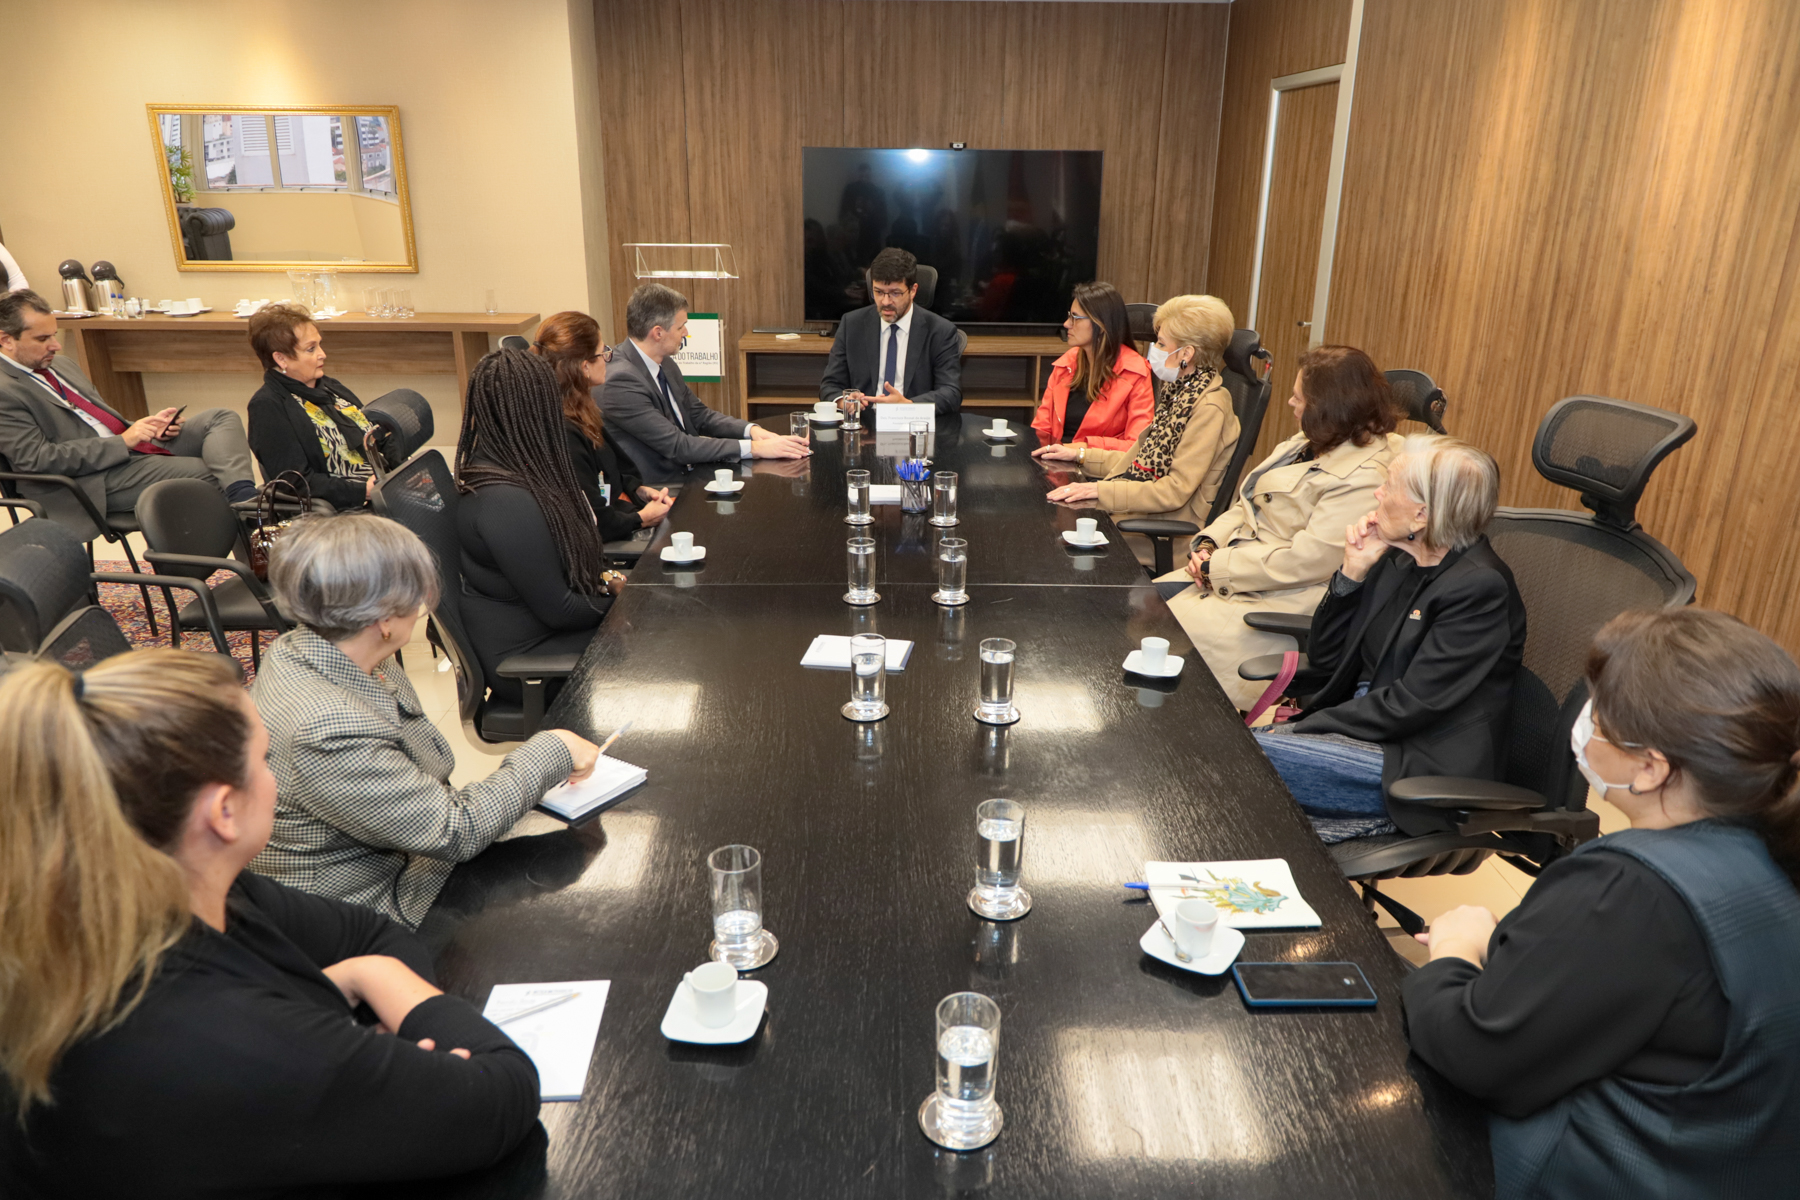 Foto da reunião, mostrando os participantes conversando, sentados à mesa do Salão Nobre